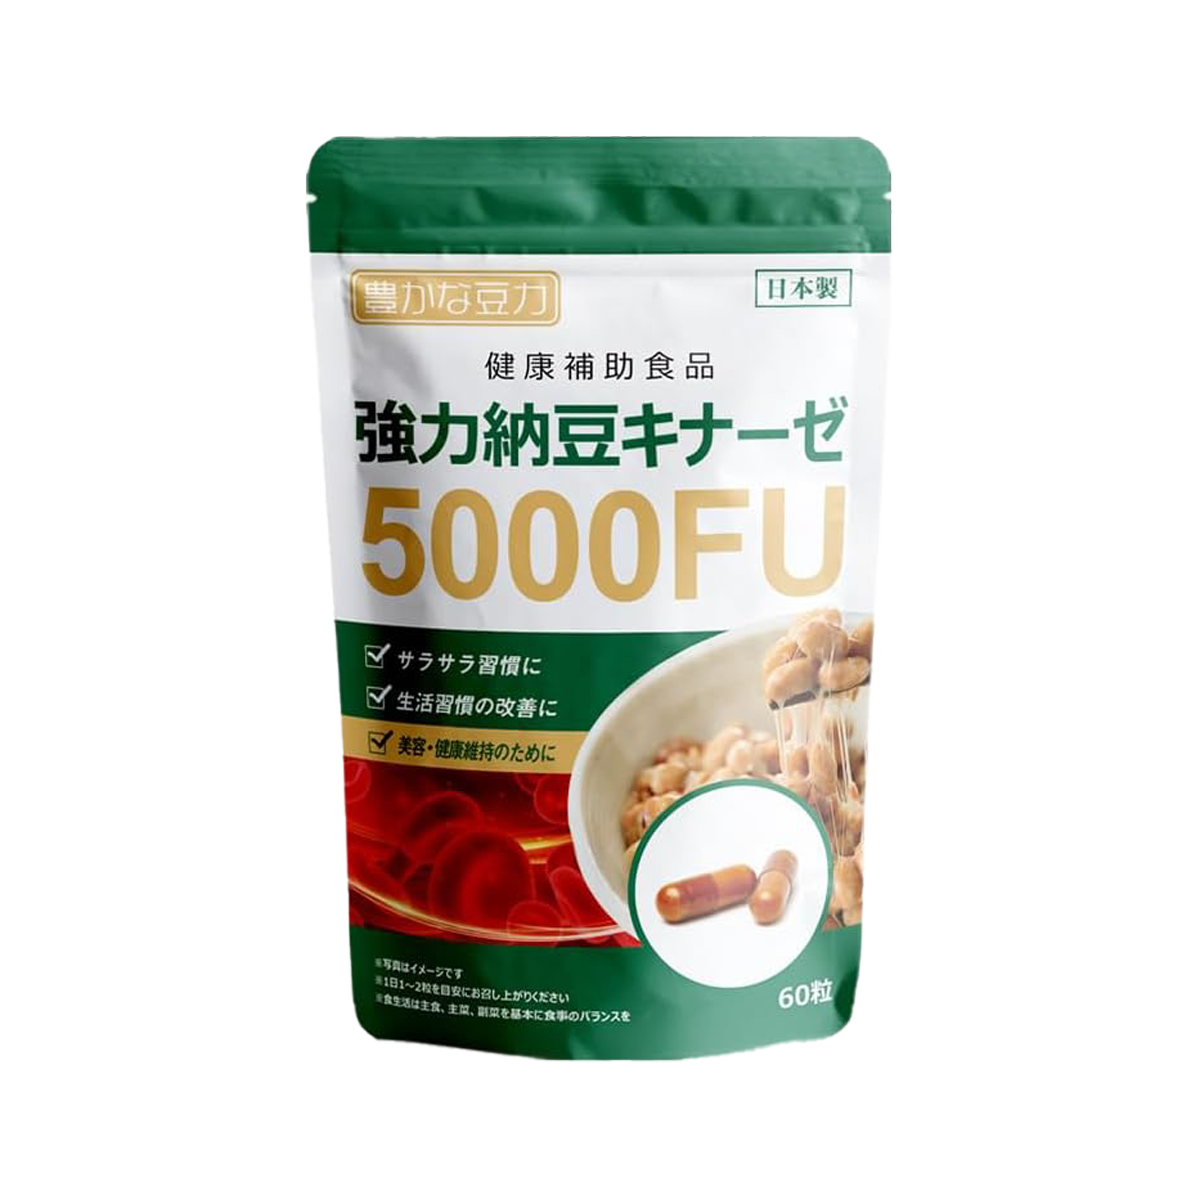 豊かな豆力 強效納豆激酶 5000FU-60粒